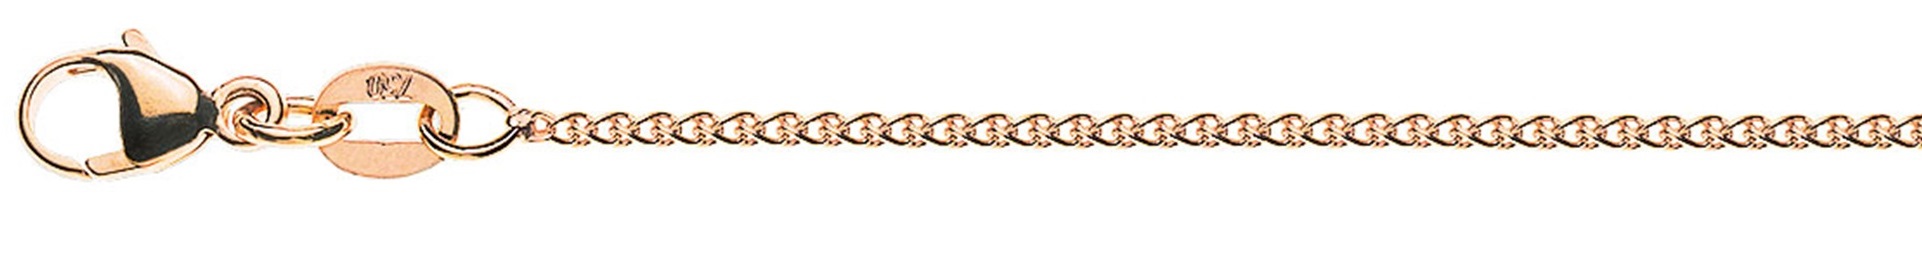 AURONOS Prestige Necklace rose gold 18K cable chain 45cm 1.2mm